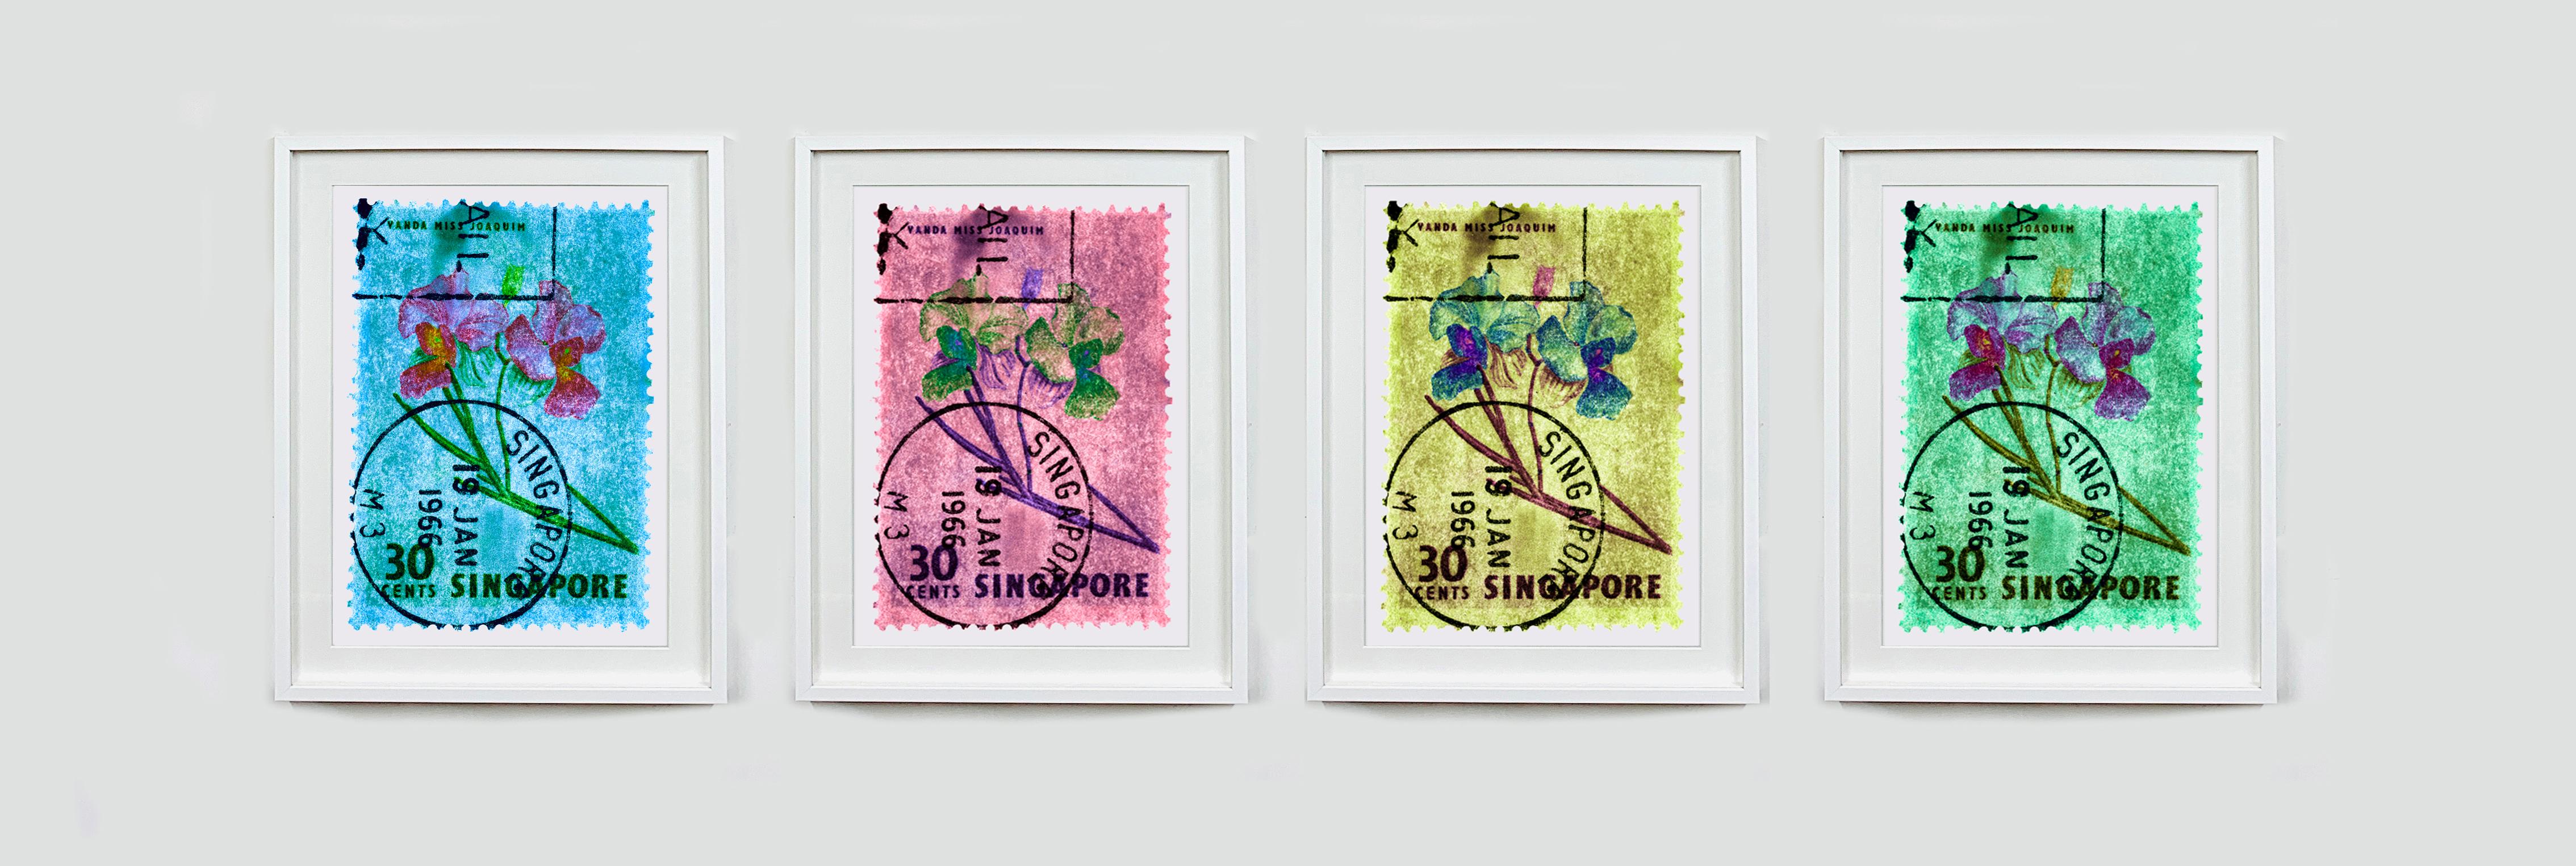 Singapore Stempel-Kollektion, 30c Singapur Vier-Blumen-Farbfoto – Print von Heidler & Heeps